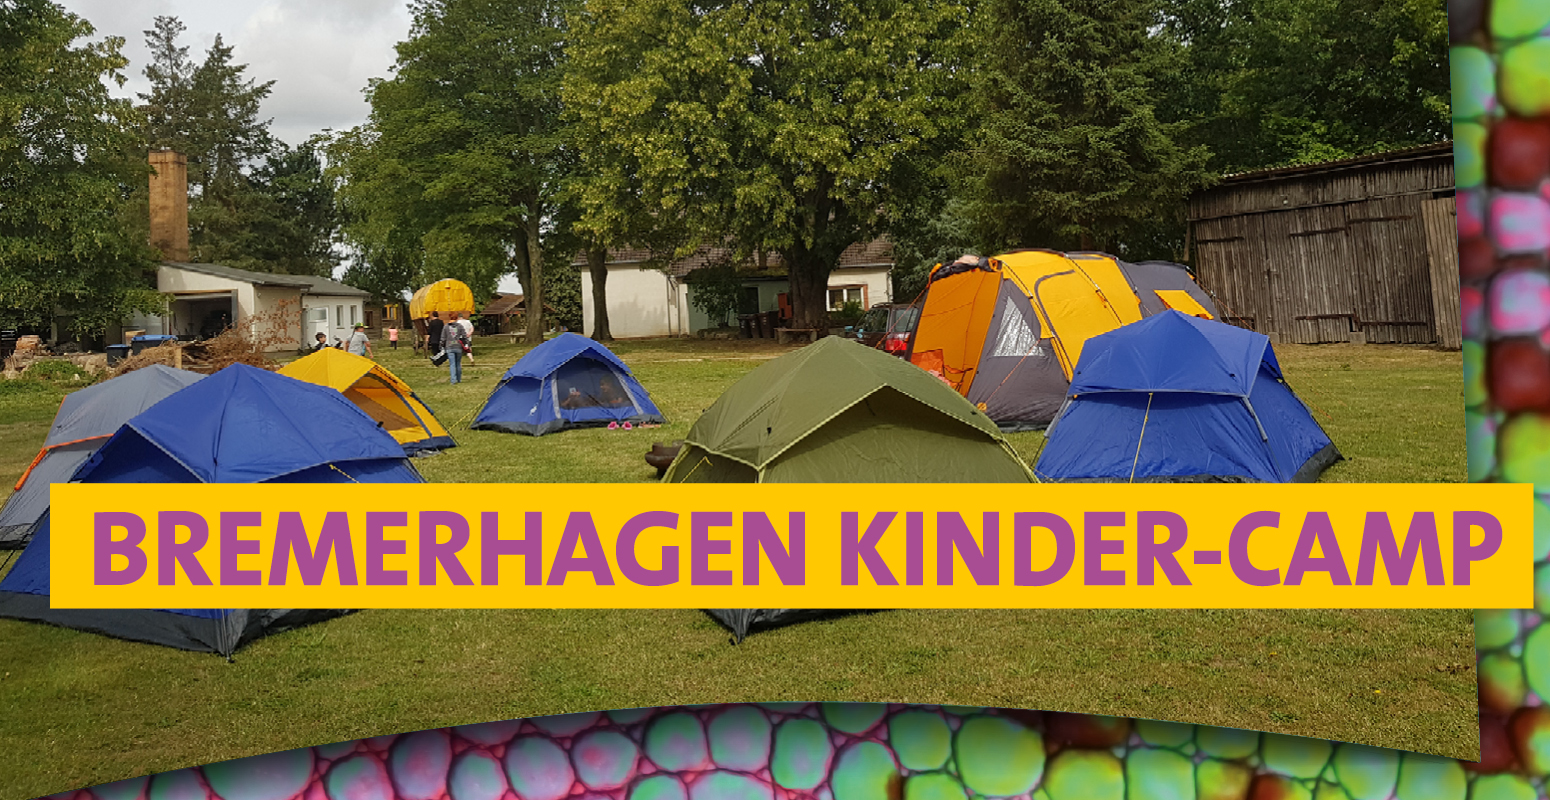 Kinder-Camp in Bremerhagen